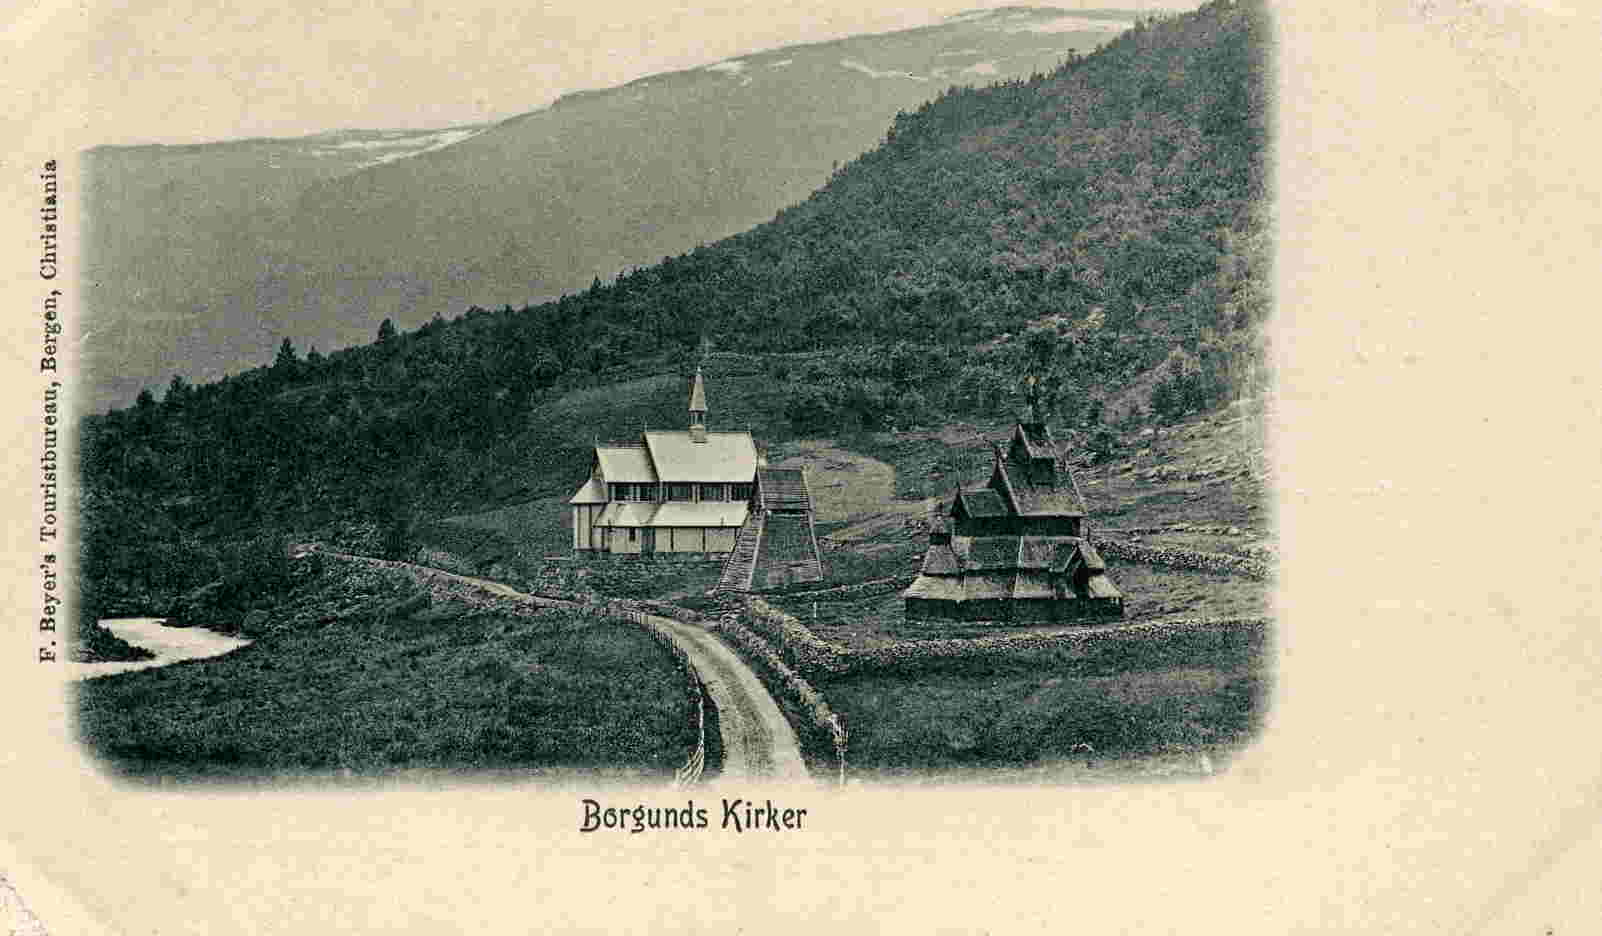 Borgunds kirker F Beyer Liten rift i høyre hjørne